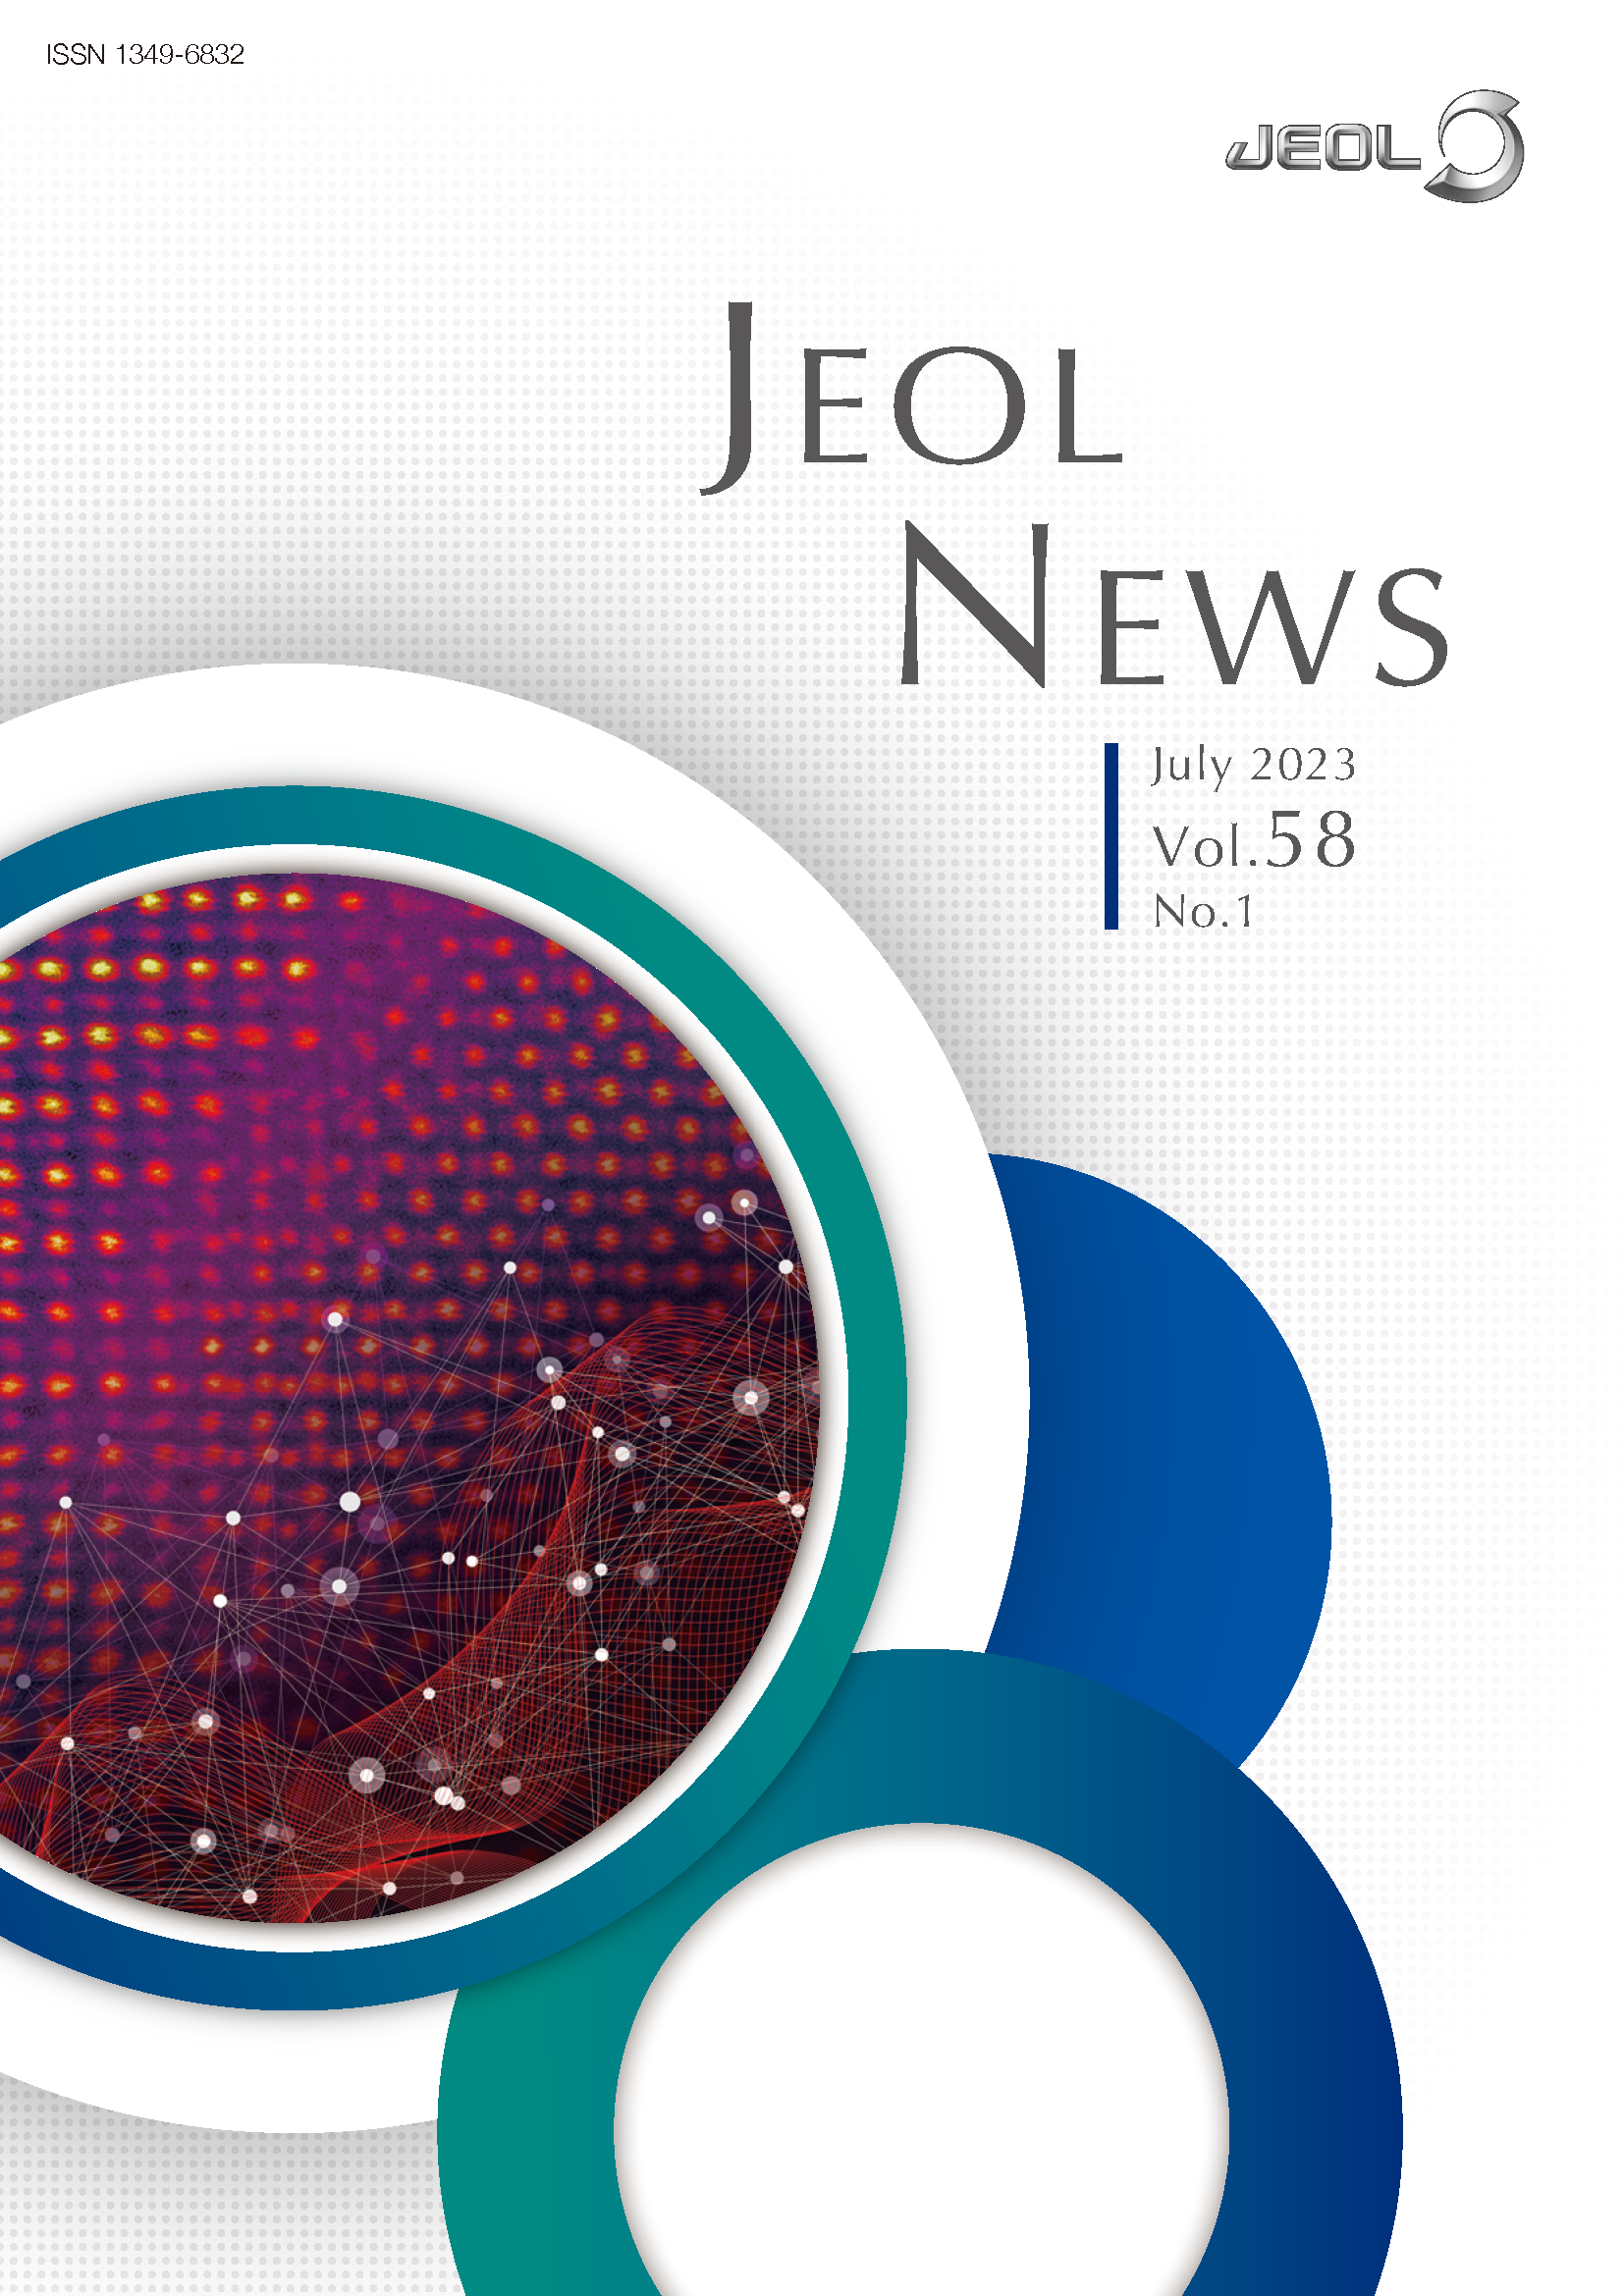 JEOL NEWS Vol.58 No.1